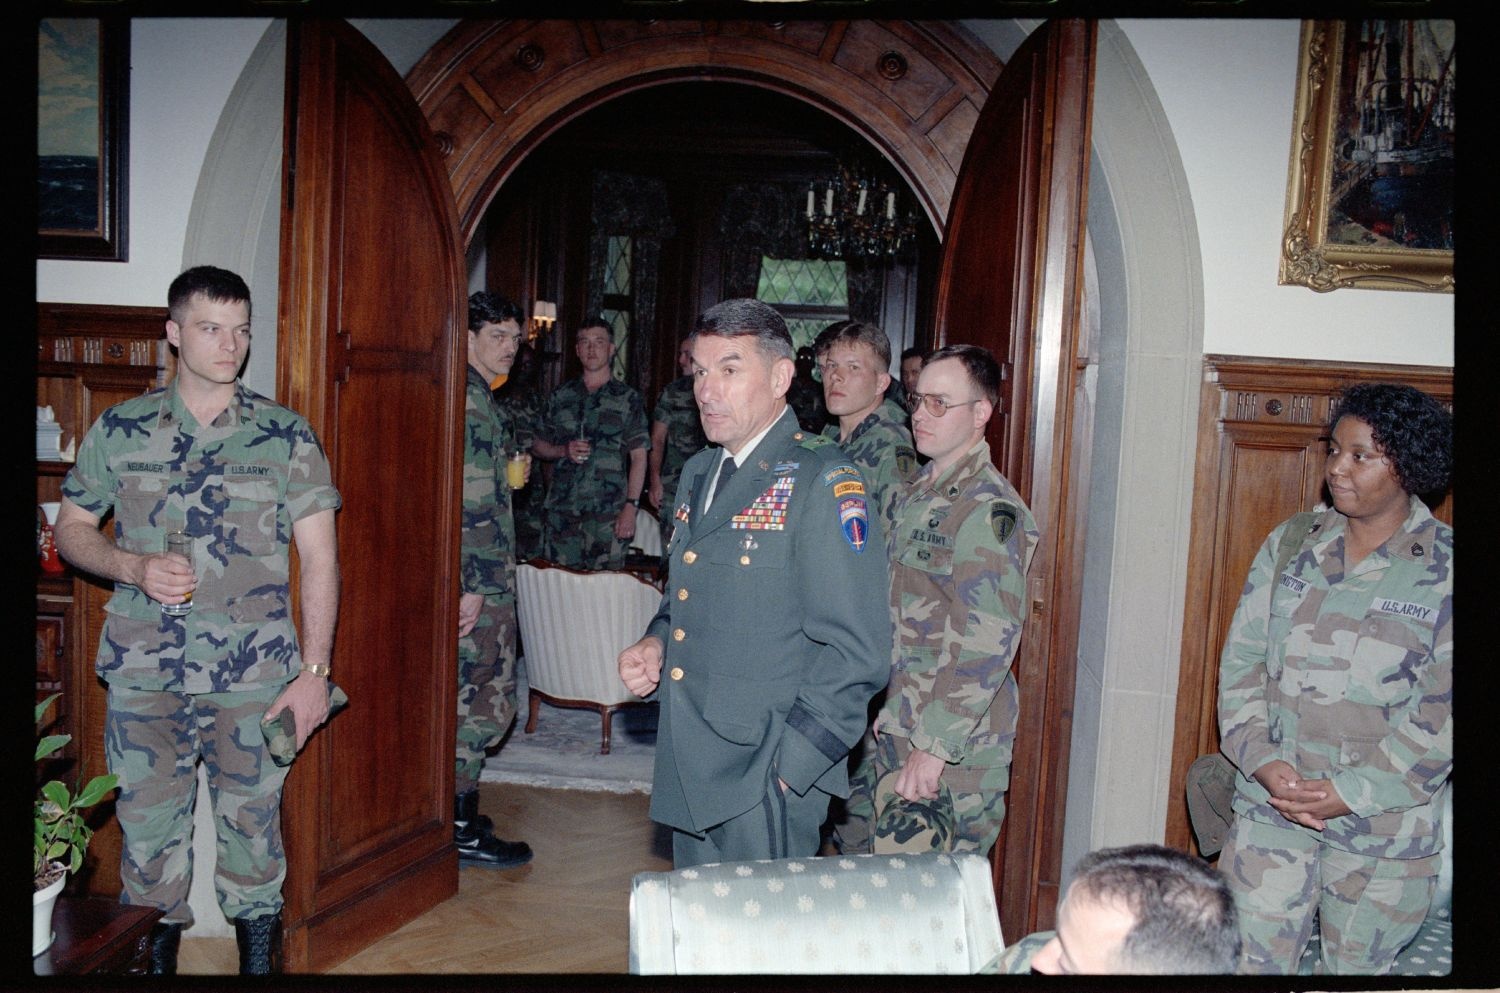 Fotografie: Unteroffiziere der U.S. Army Berlin Brigade zu Besuch in der Residenz von Brigadier General Sidney Shachnow in Berlin-Dahlem